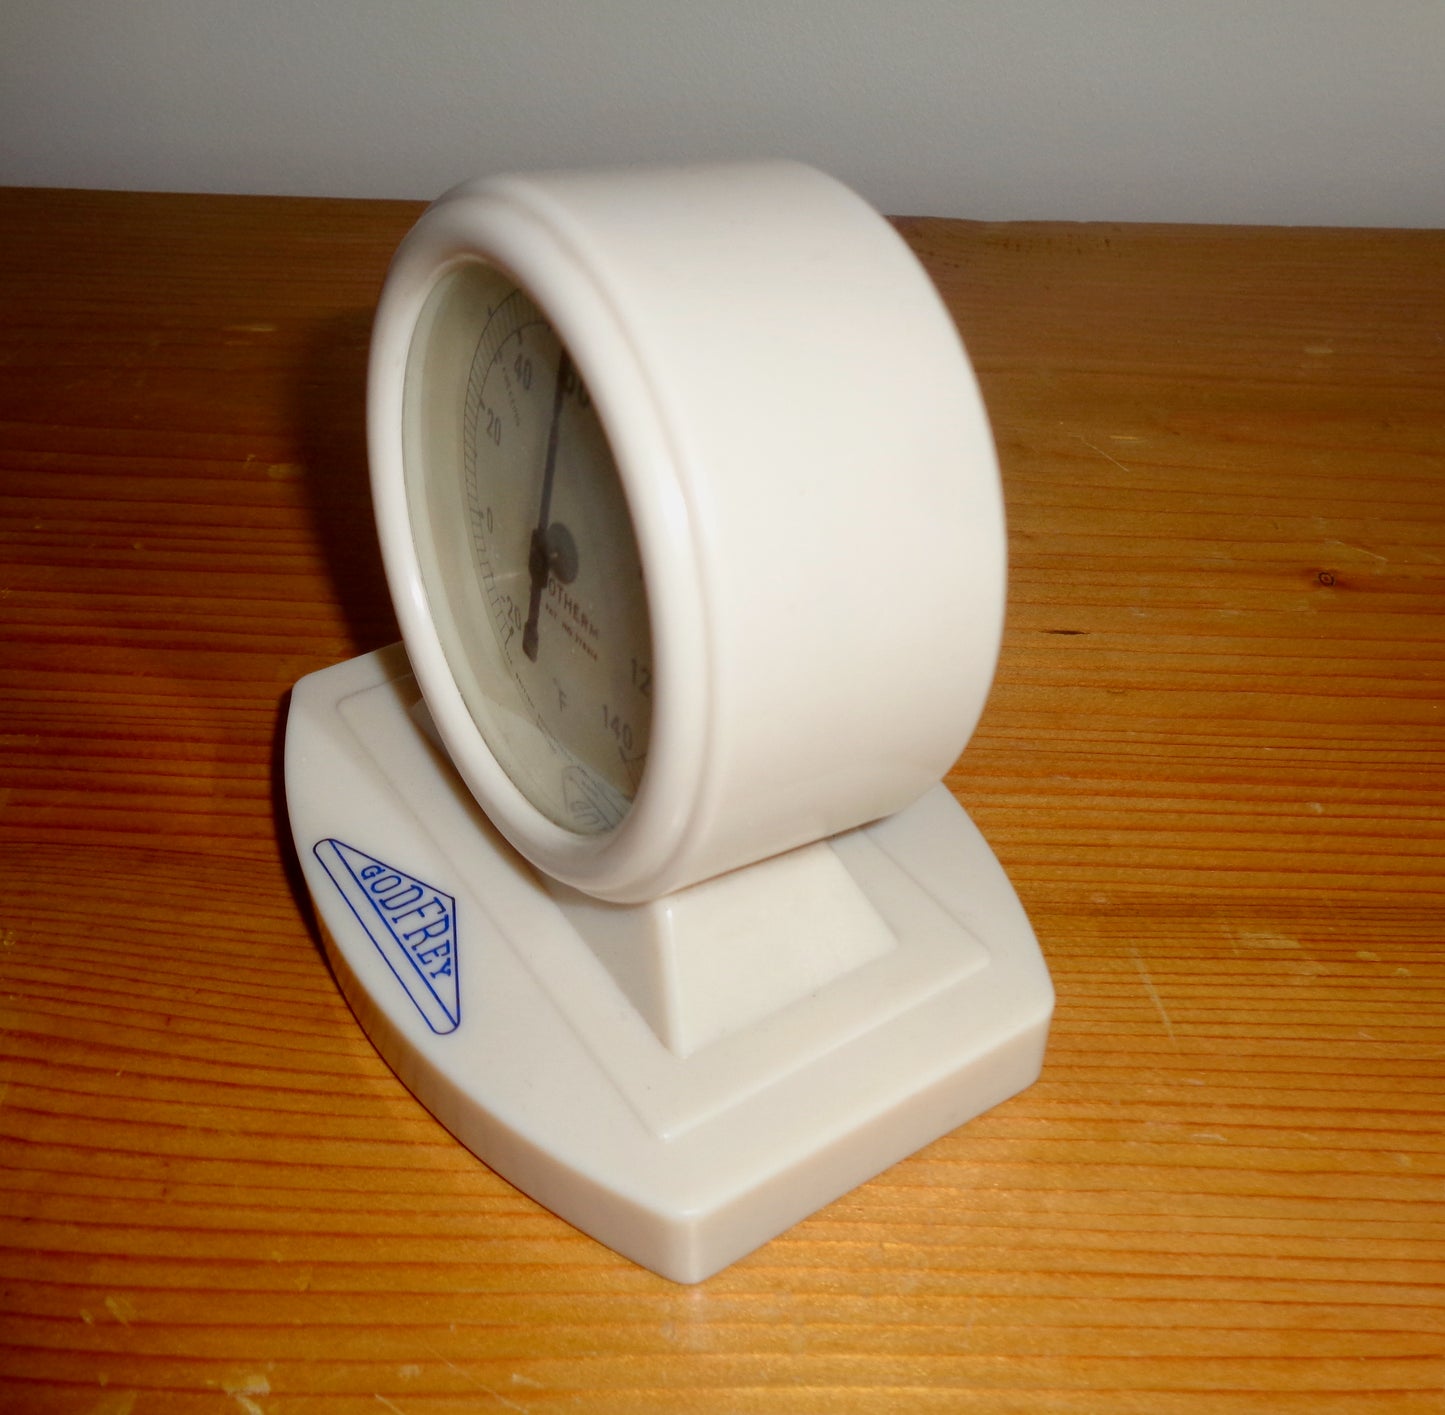 1930s White Bakelite Rototherm Thermometer